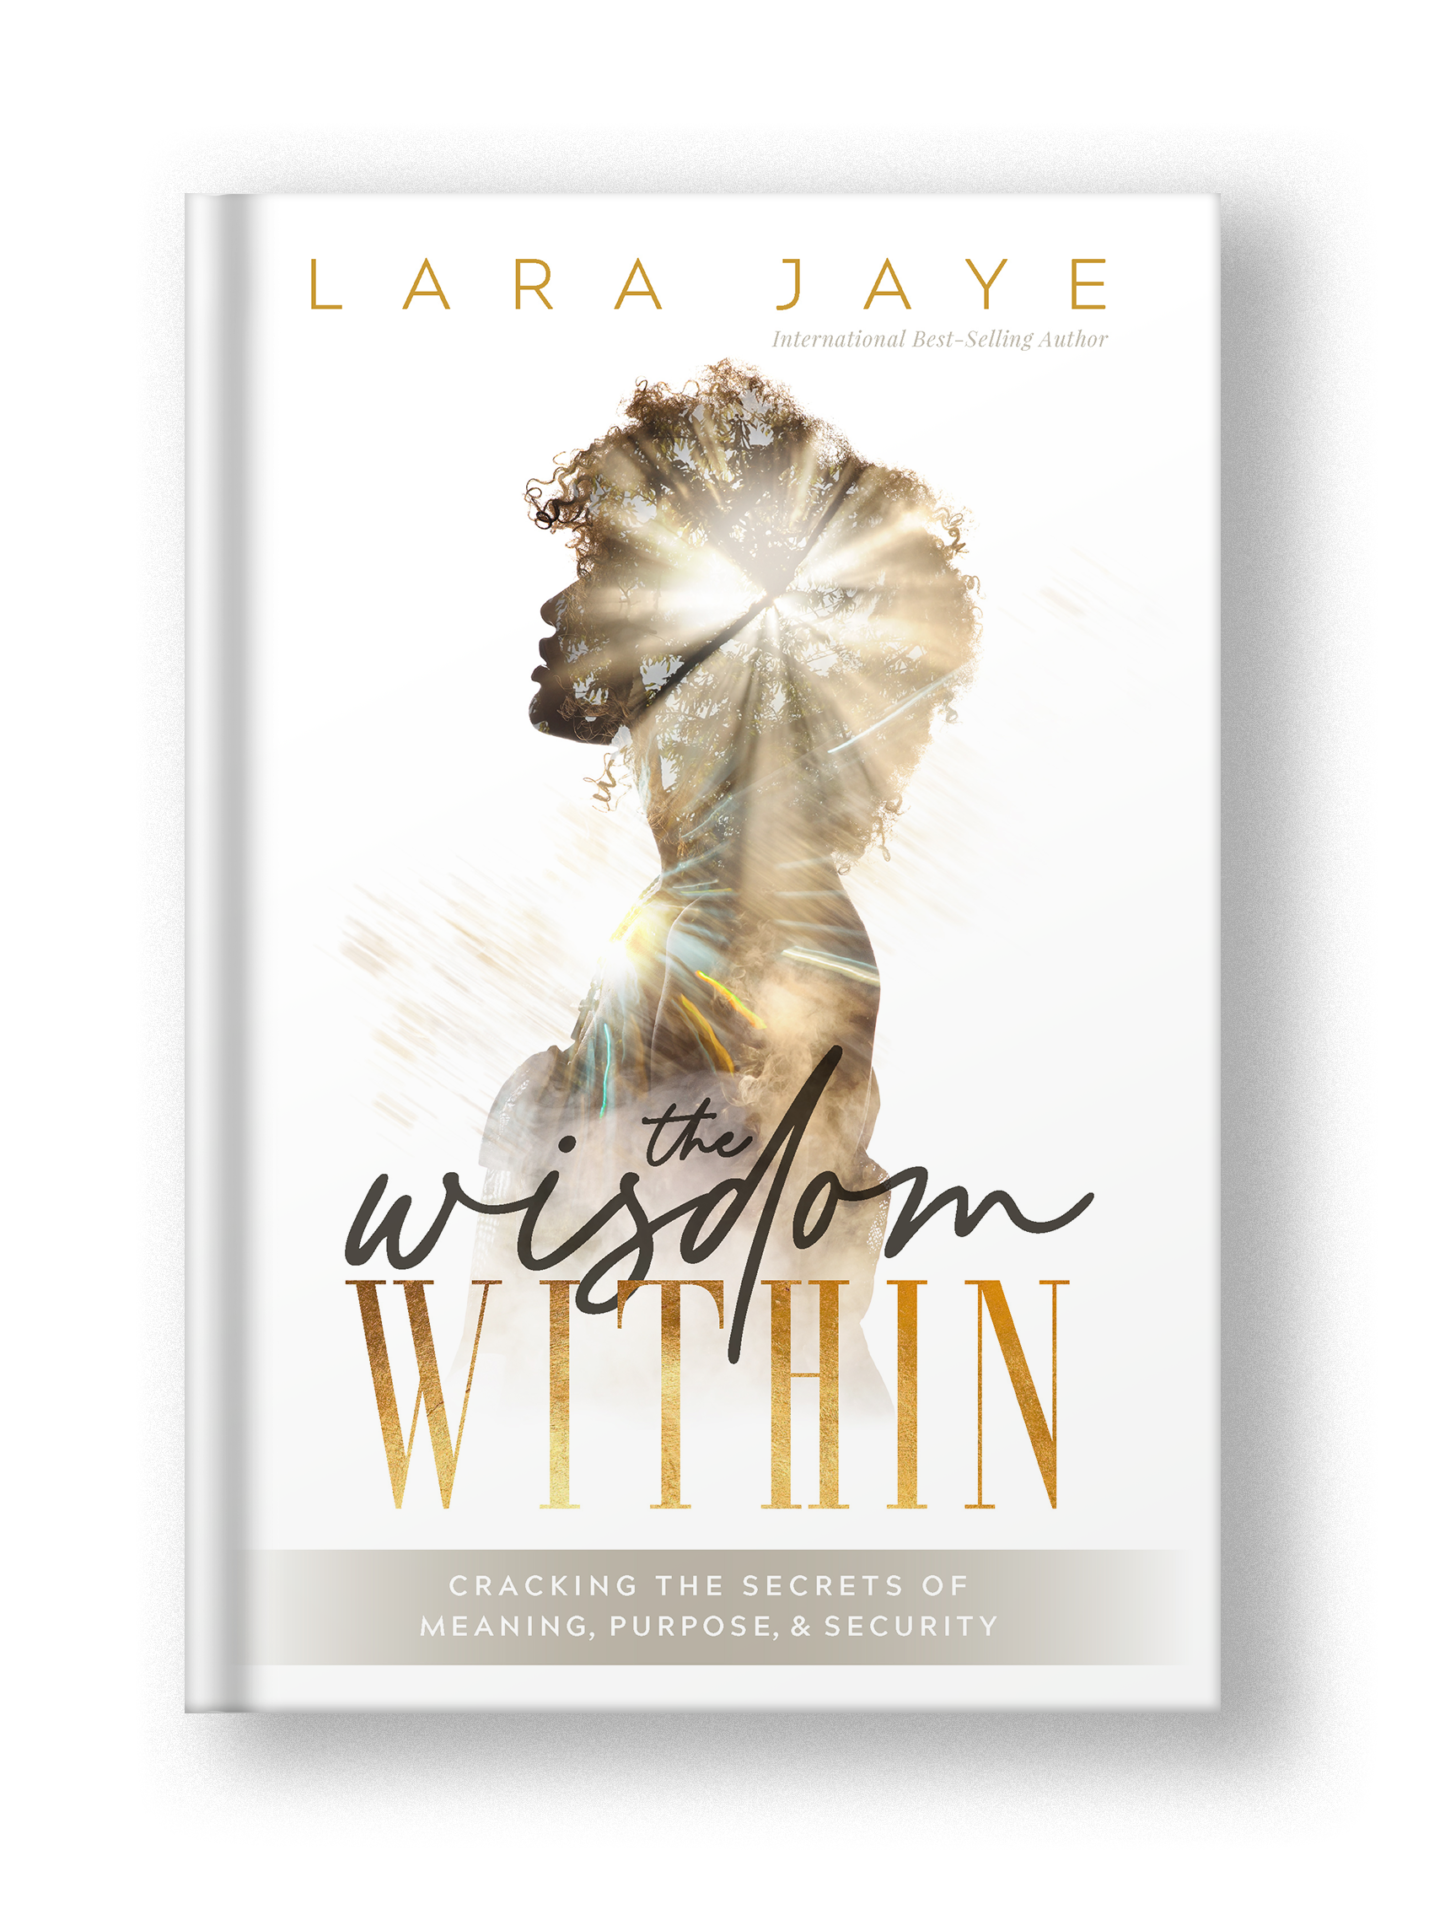 Lara Jaye The Wisdom Within